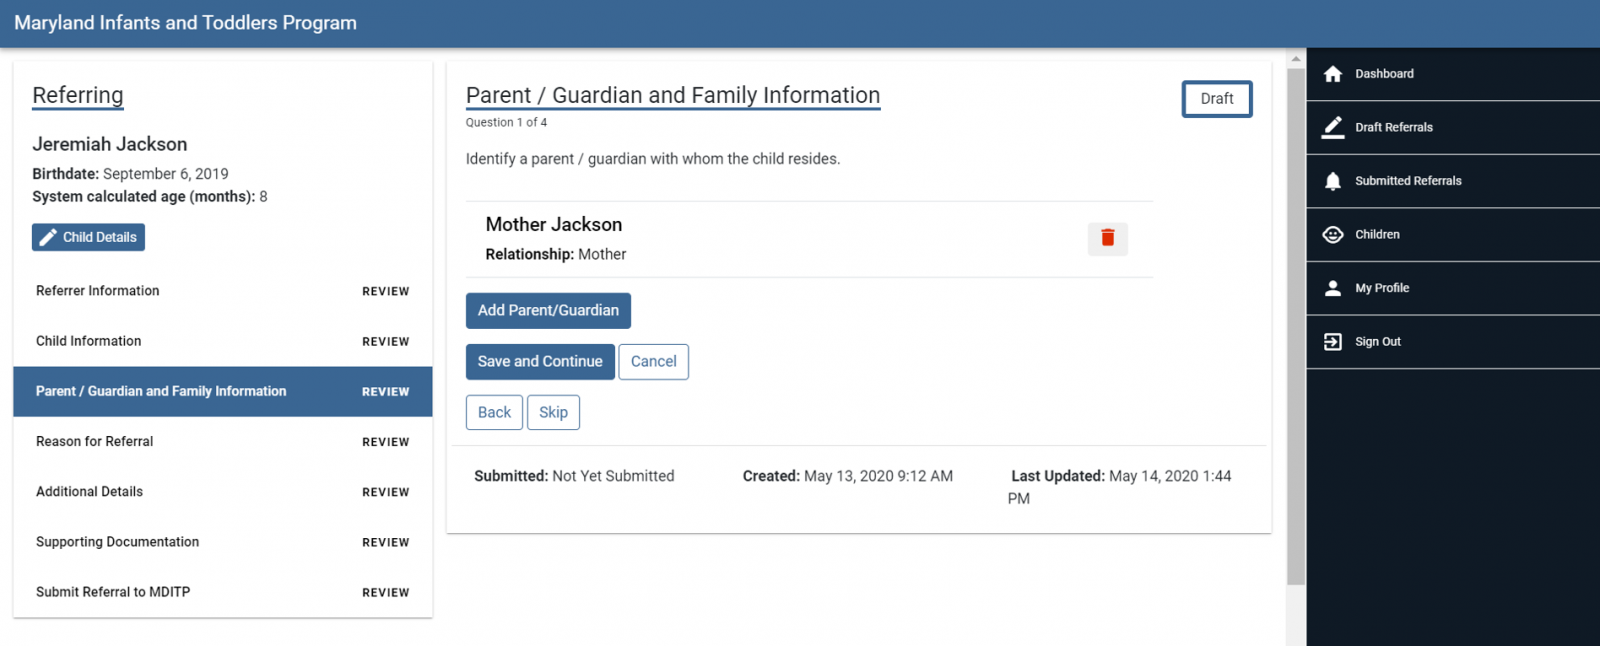 parent guardian family menu - add parent